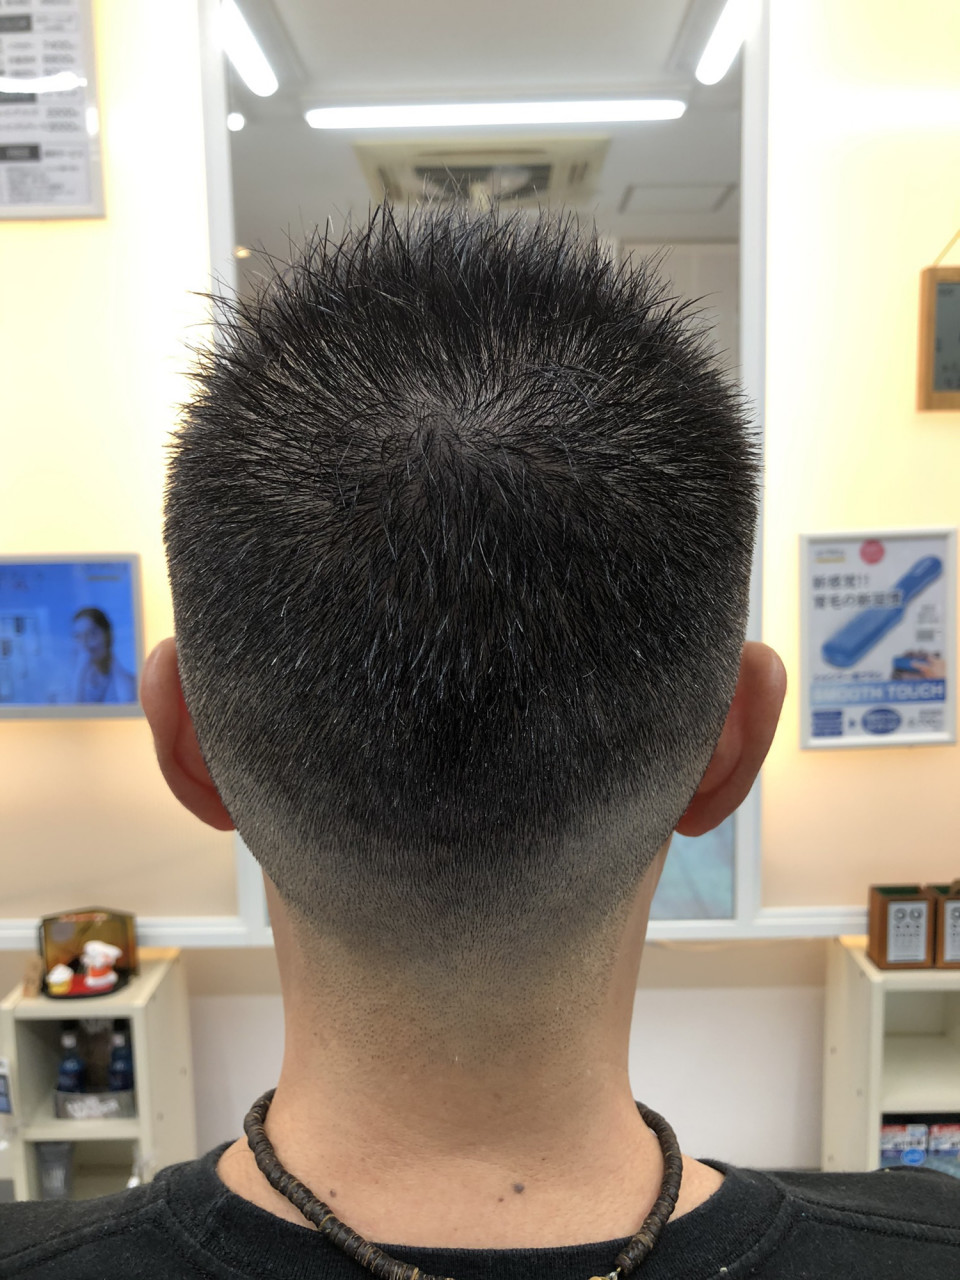 前髪も刈り上げるおしゃれボウズ カットスペース K 横浜市港南区の理容室 上永谷と下永谷の中間地にある理髪店です 駐車場２台分完備